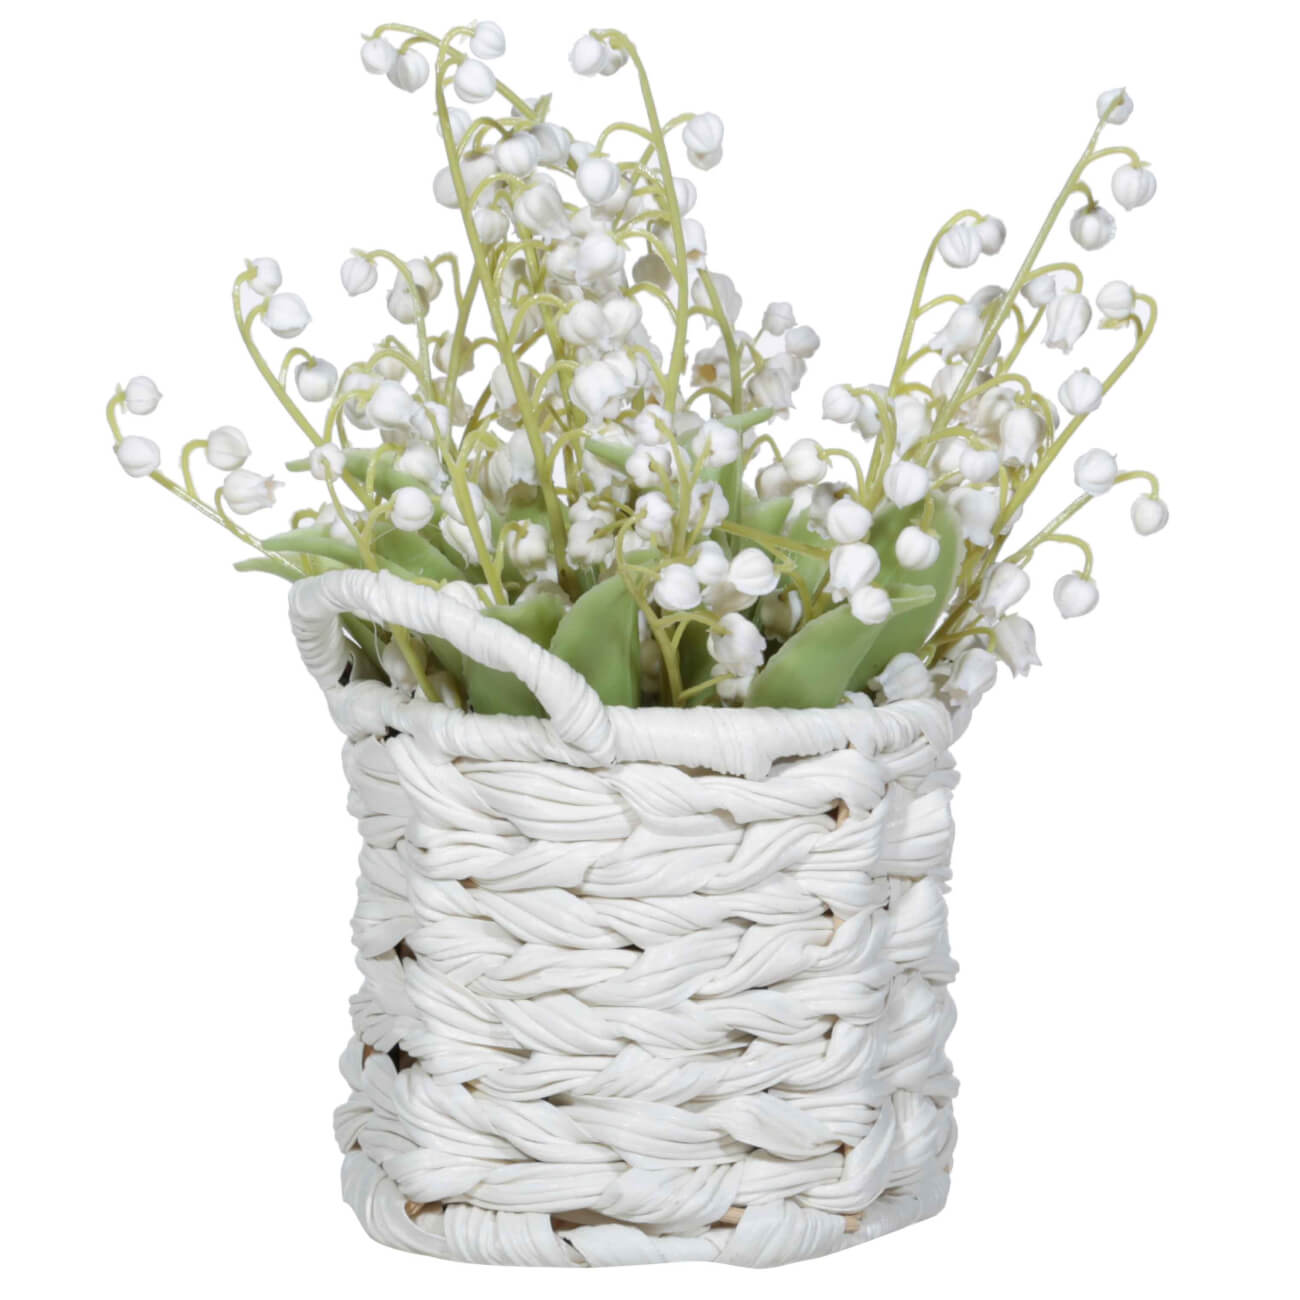 Растение искусственное, 23 см, в корзине, пластик/полиуретан, Корзина ландышей, May-lily букет искусственный 42 см пластик полиуретан ландыши may lily